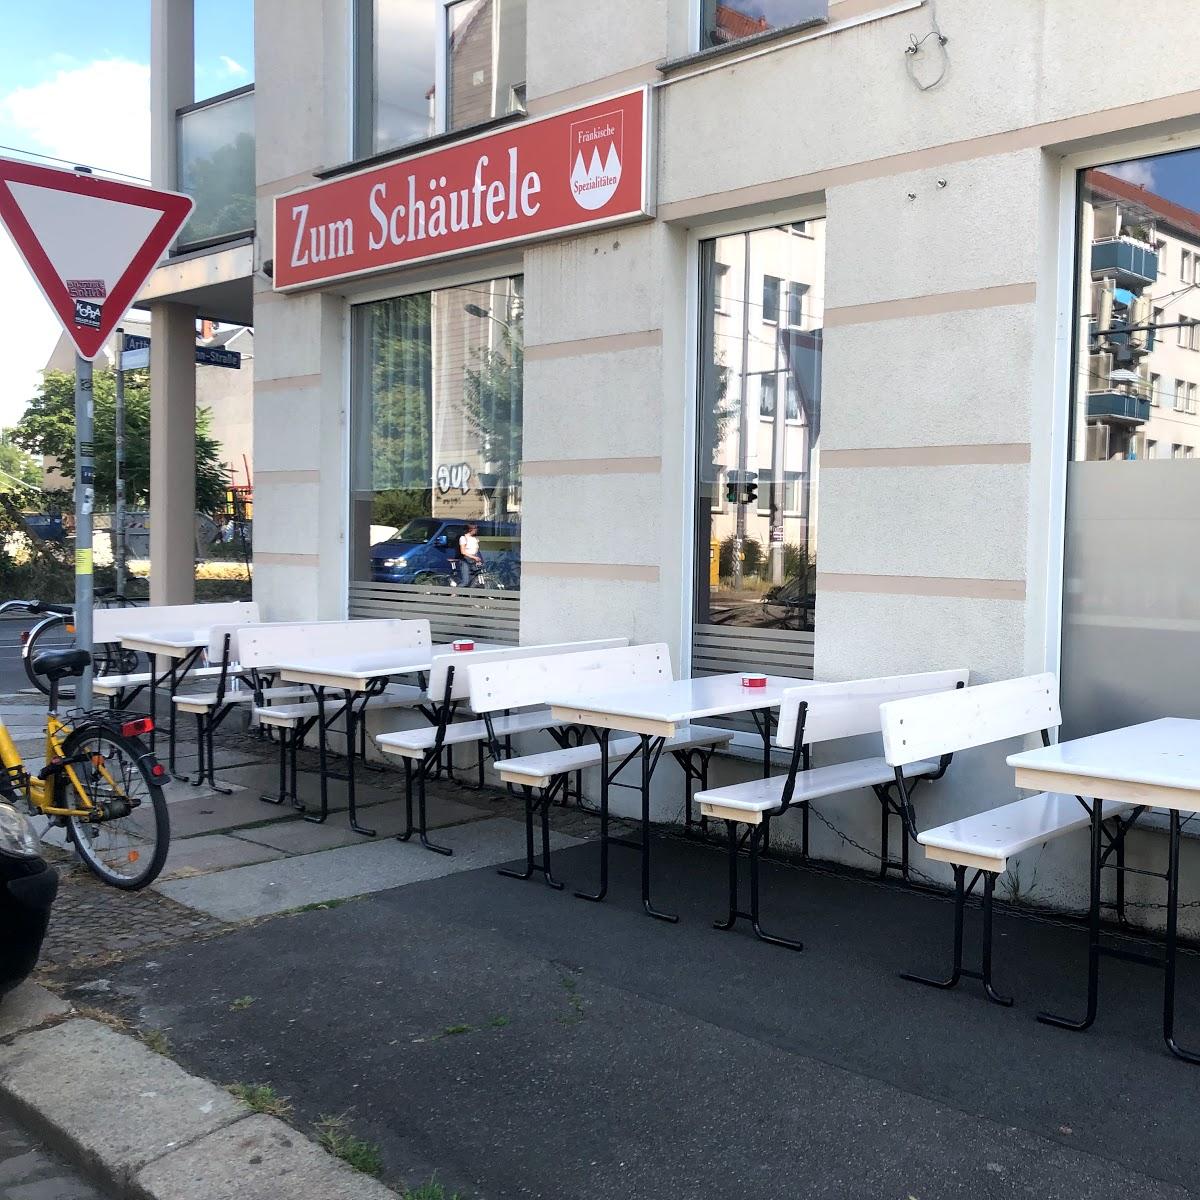 Restaurant "Zum Schäufele" in Leipzig